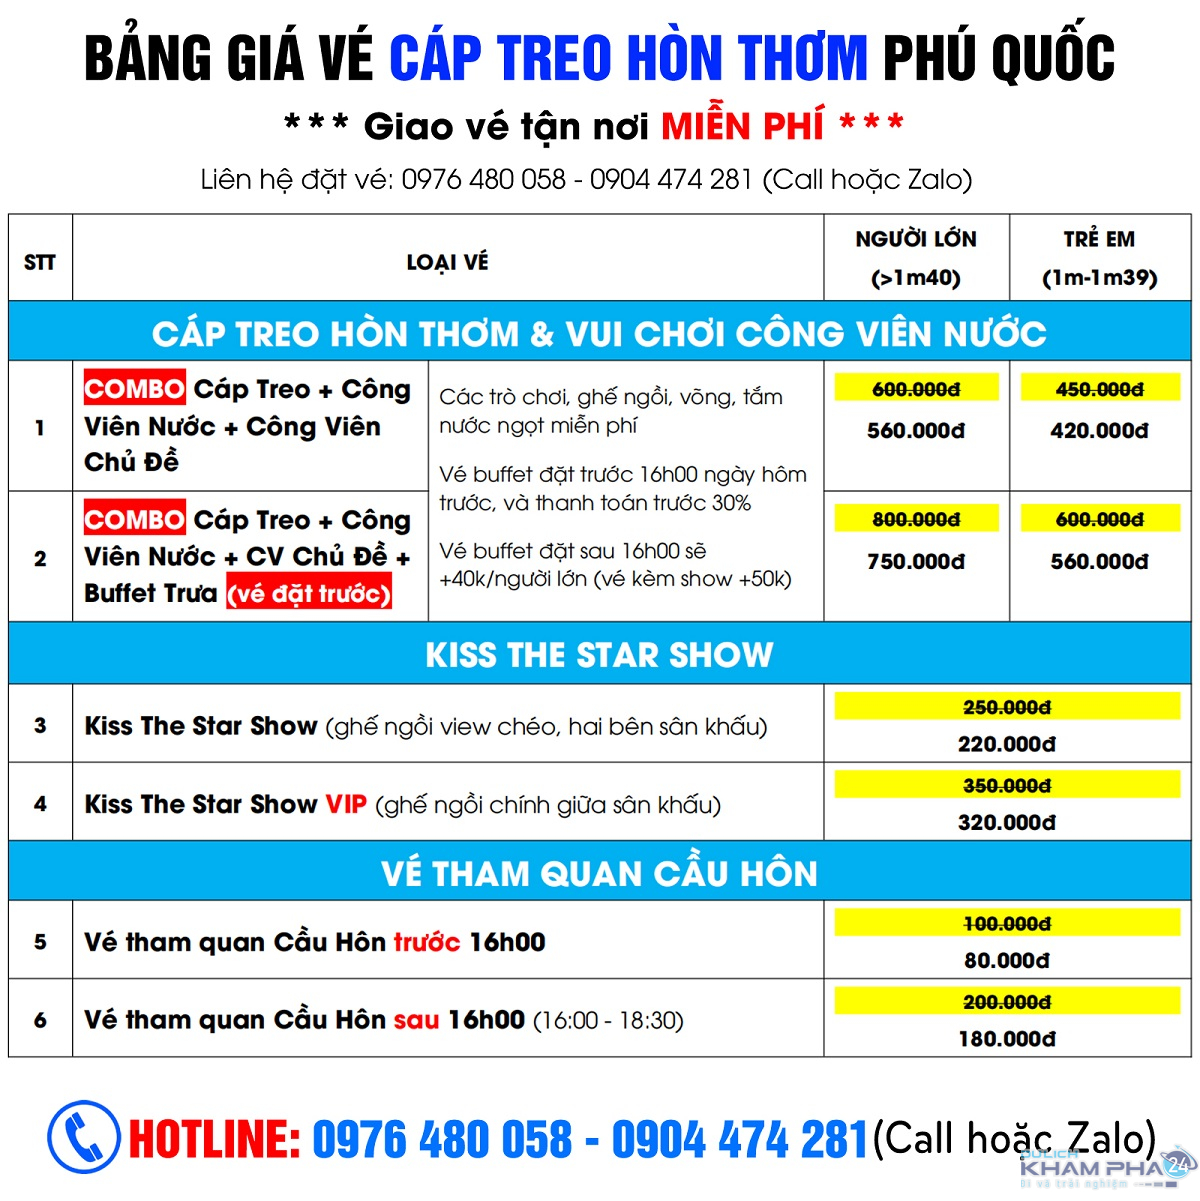 Bang gia cap treo Hon Thom Phu Quoc